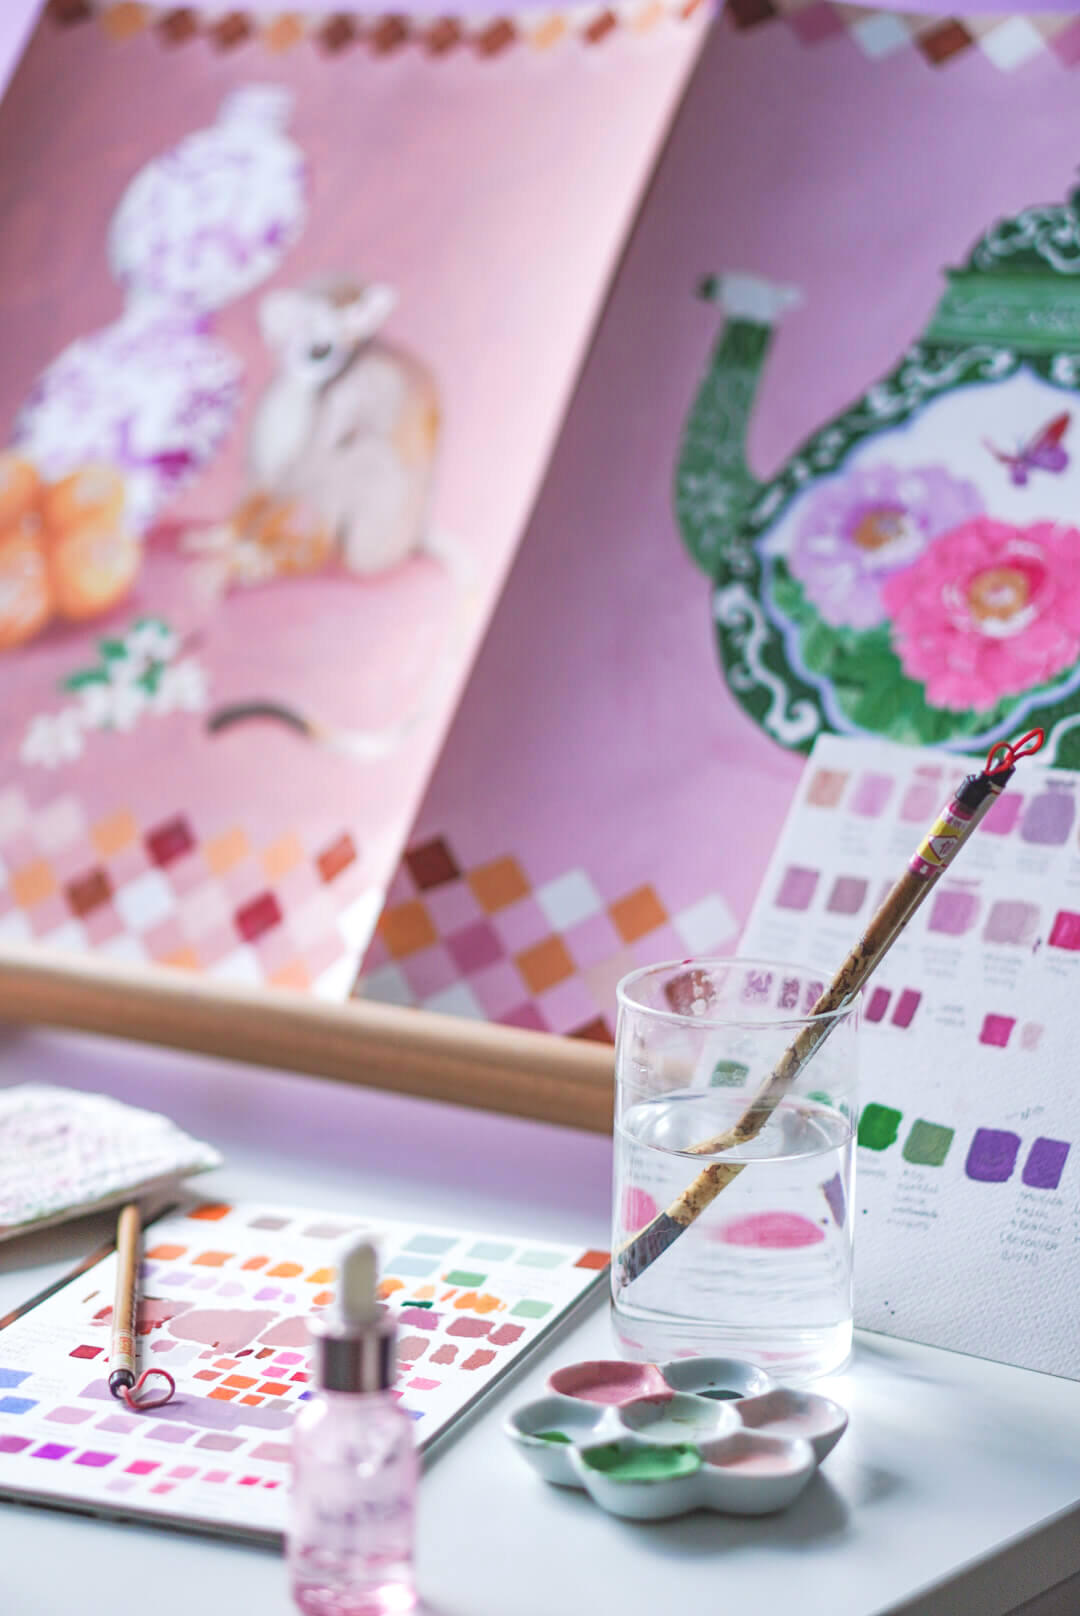 Colourful, nature-inspired paintings and prints inside Gina Maldonado's Hong Kong studio